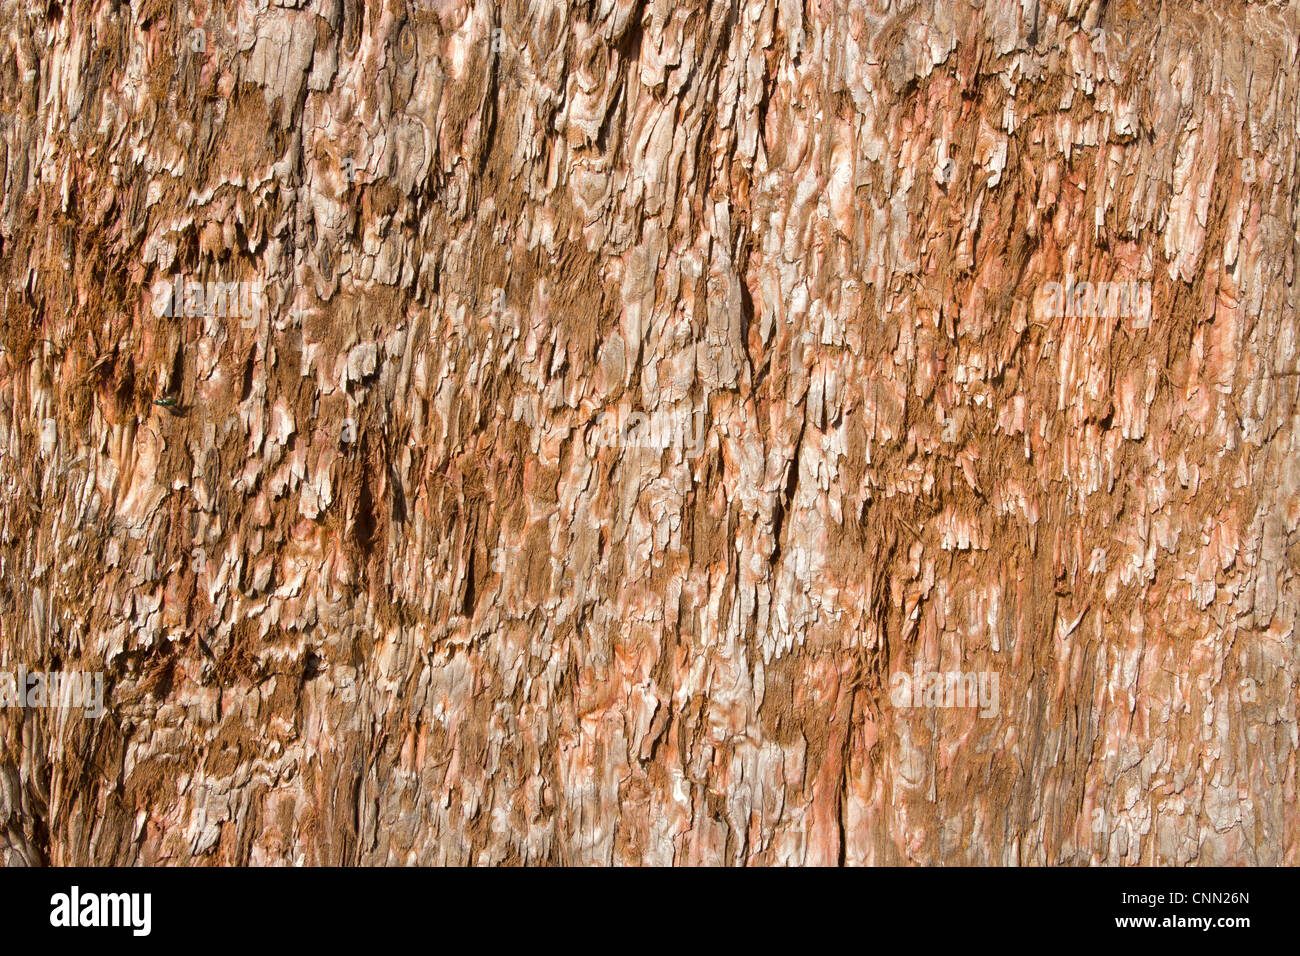 Tree bark close up natural abstract. Stock Photo